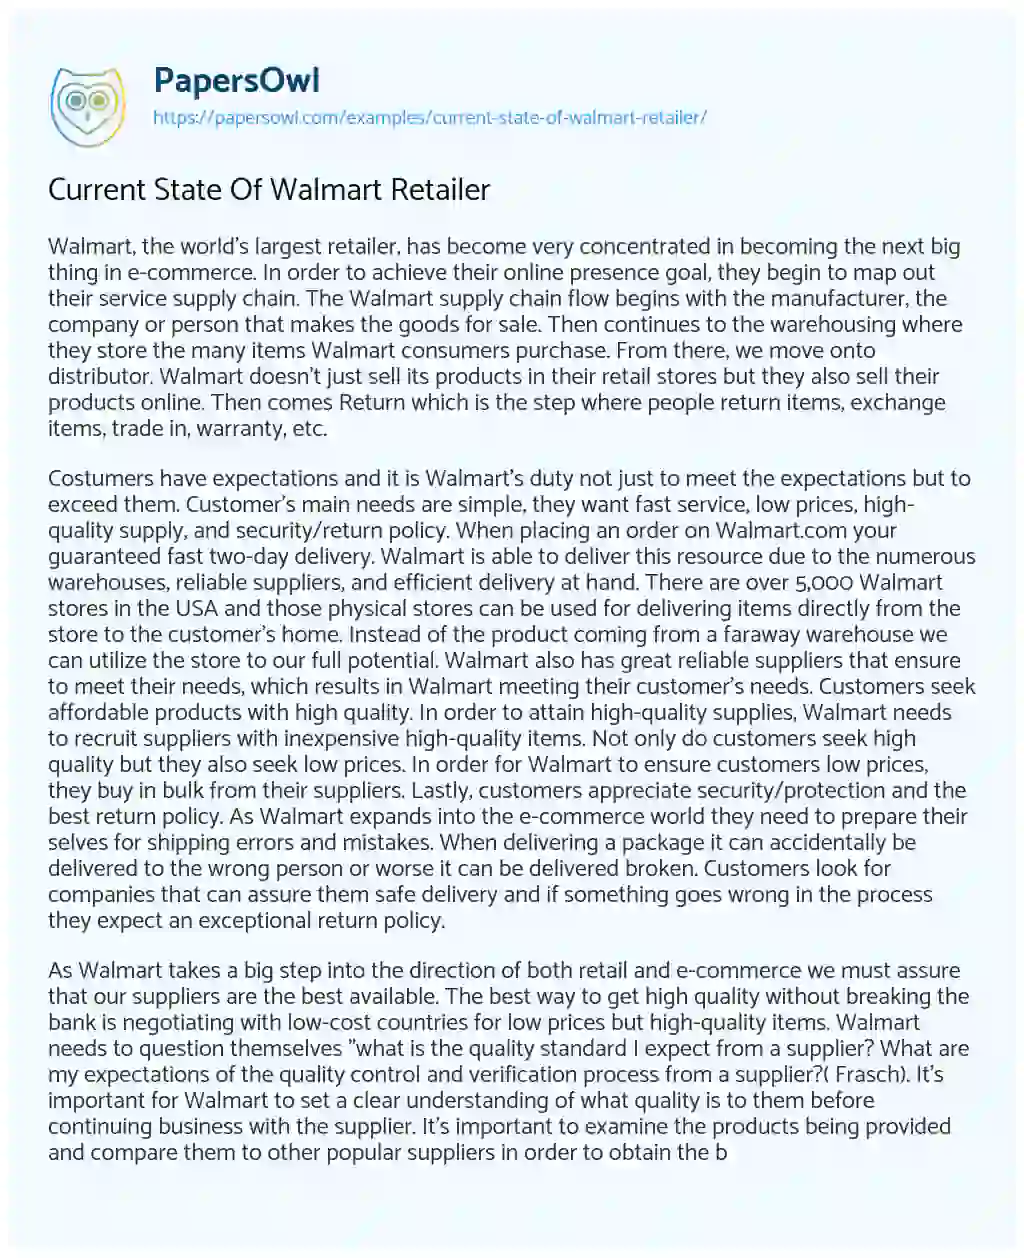 Current State of Walmart Retailer essay